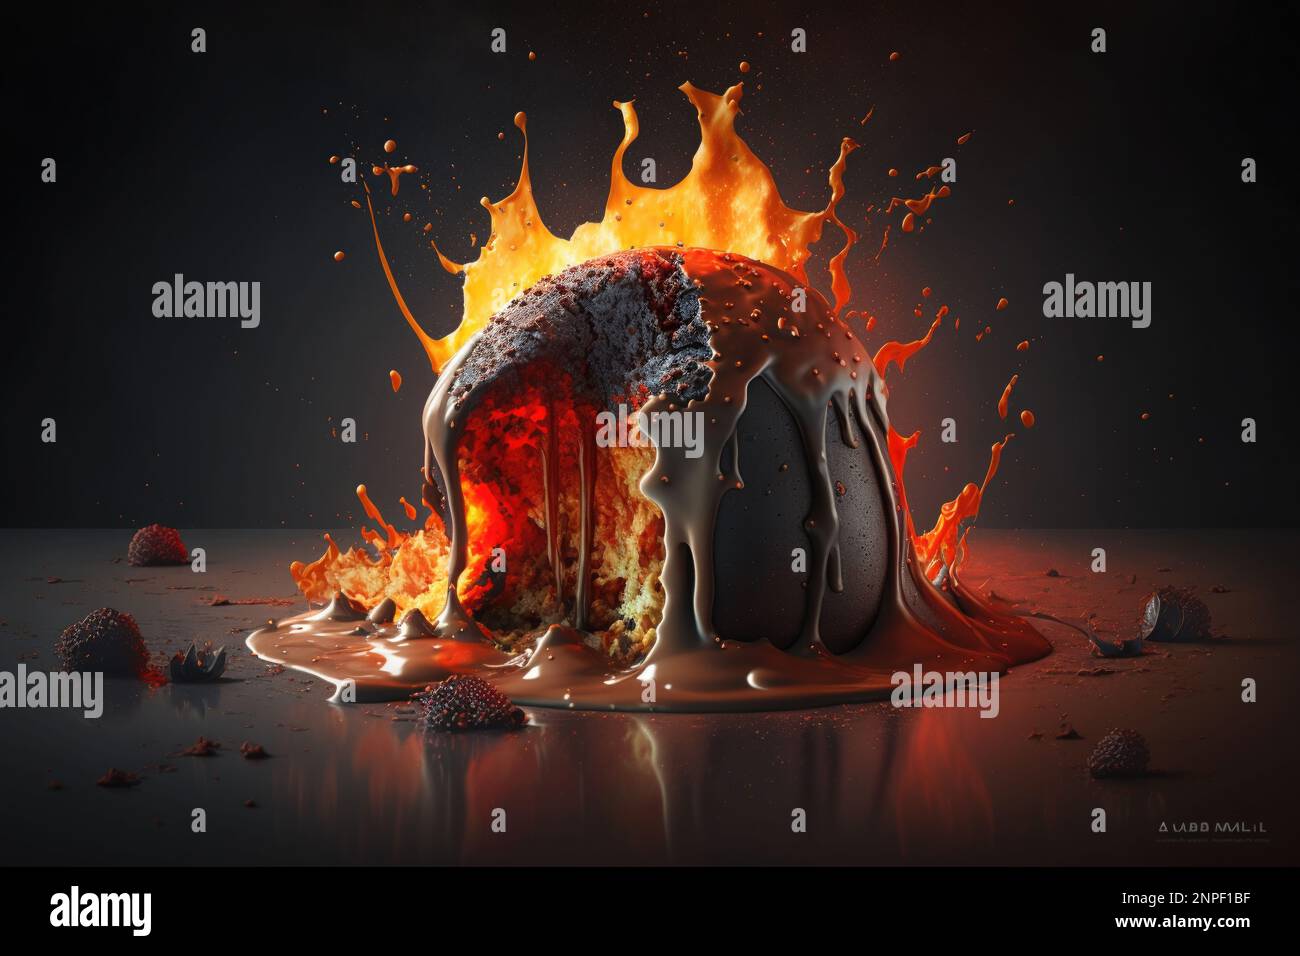 Kuchen Explosion Stock Photo